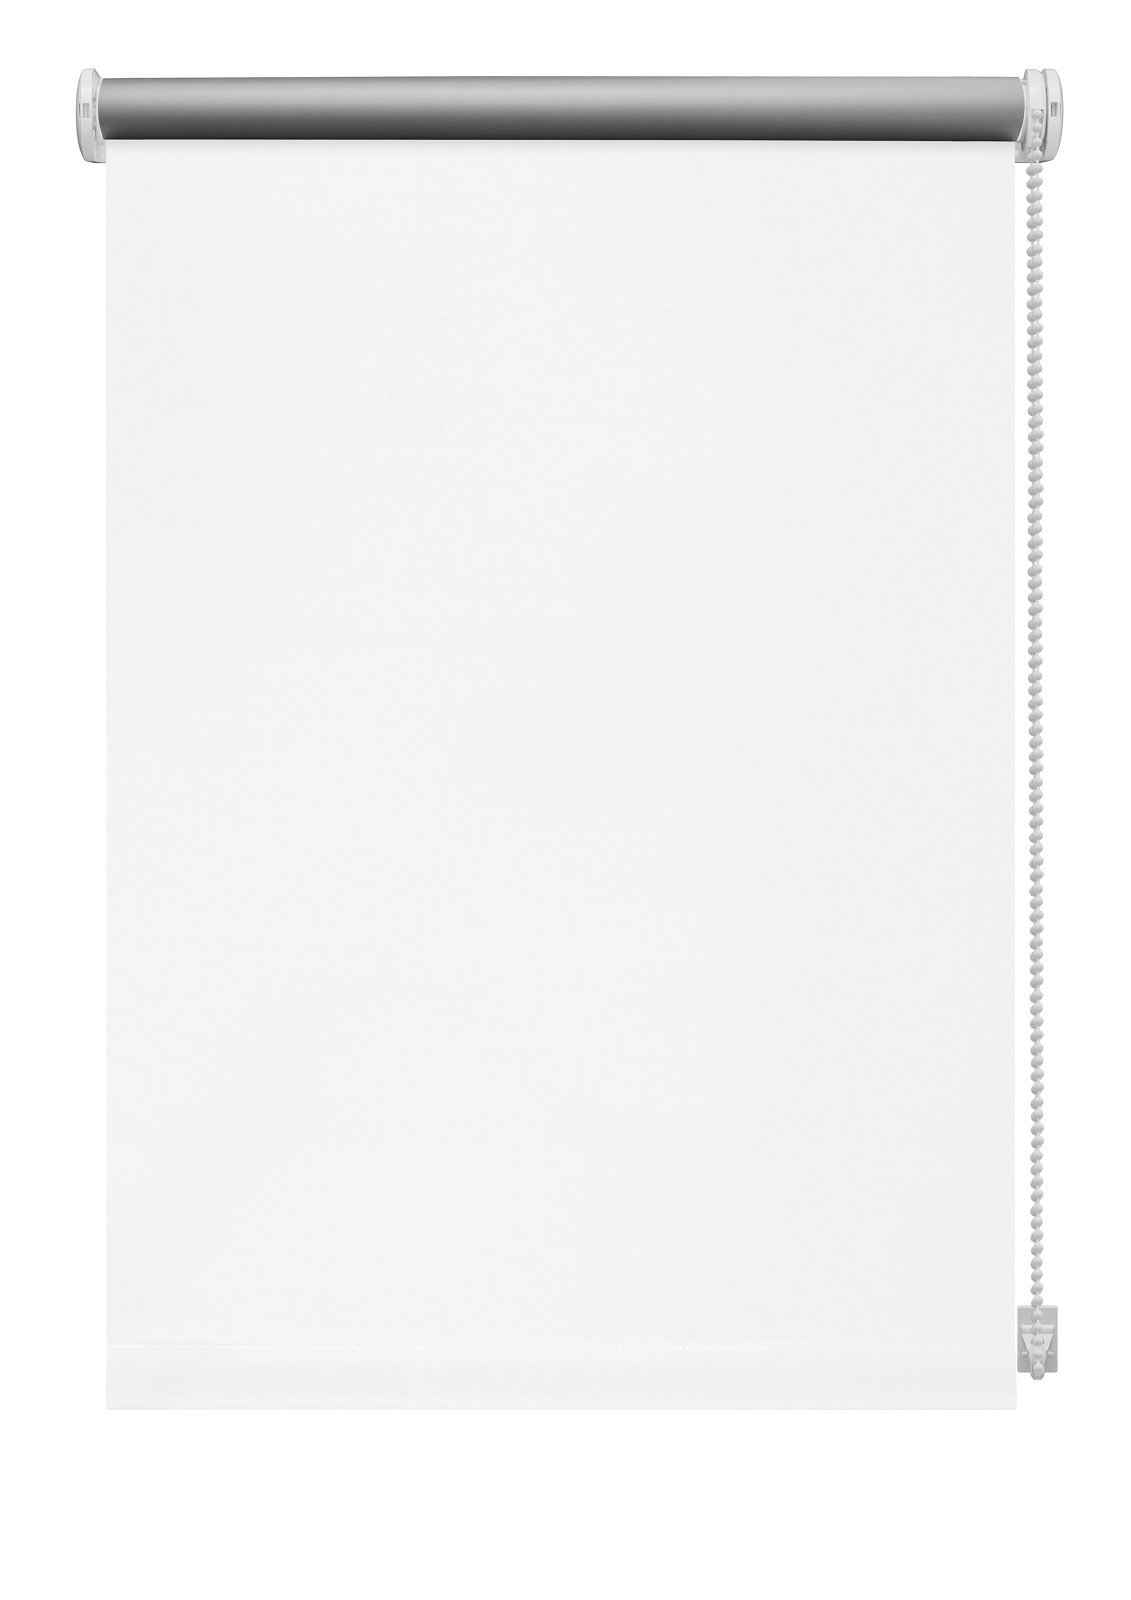 Klasikinė ritininė užuolaida THERMO 905, baltos sp., 180 x 210 cm - 2